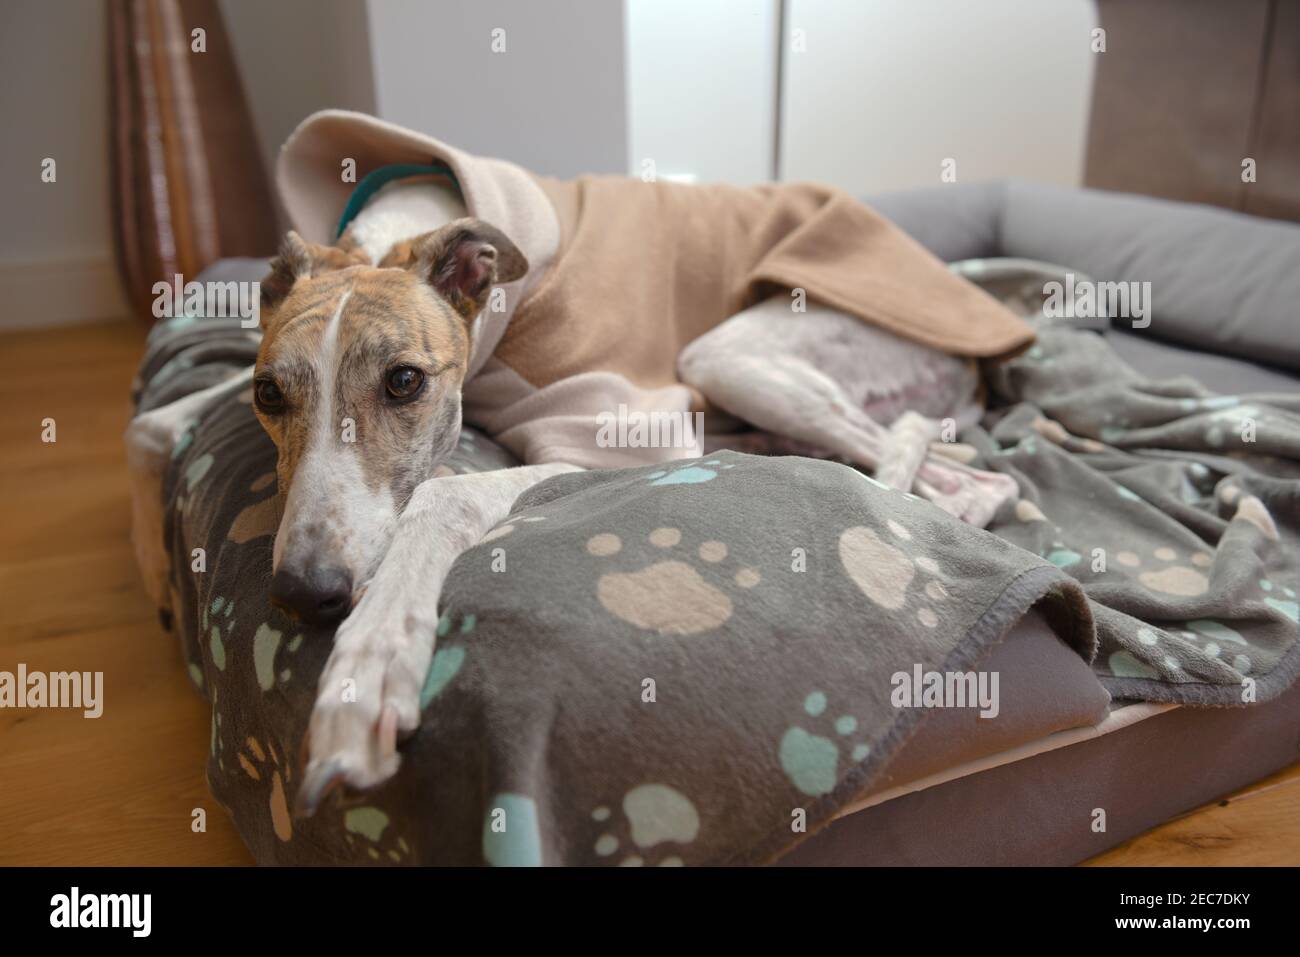 Blanc et brun grand animal greyhound repose la tête et regarde la caméra de son lit de chien. Couverture à motif Paw et pull en polaire épais pour plus de chaleur Banque D'Images